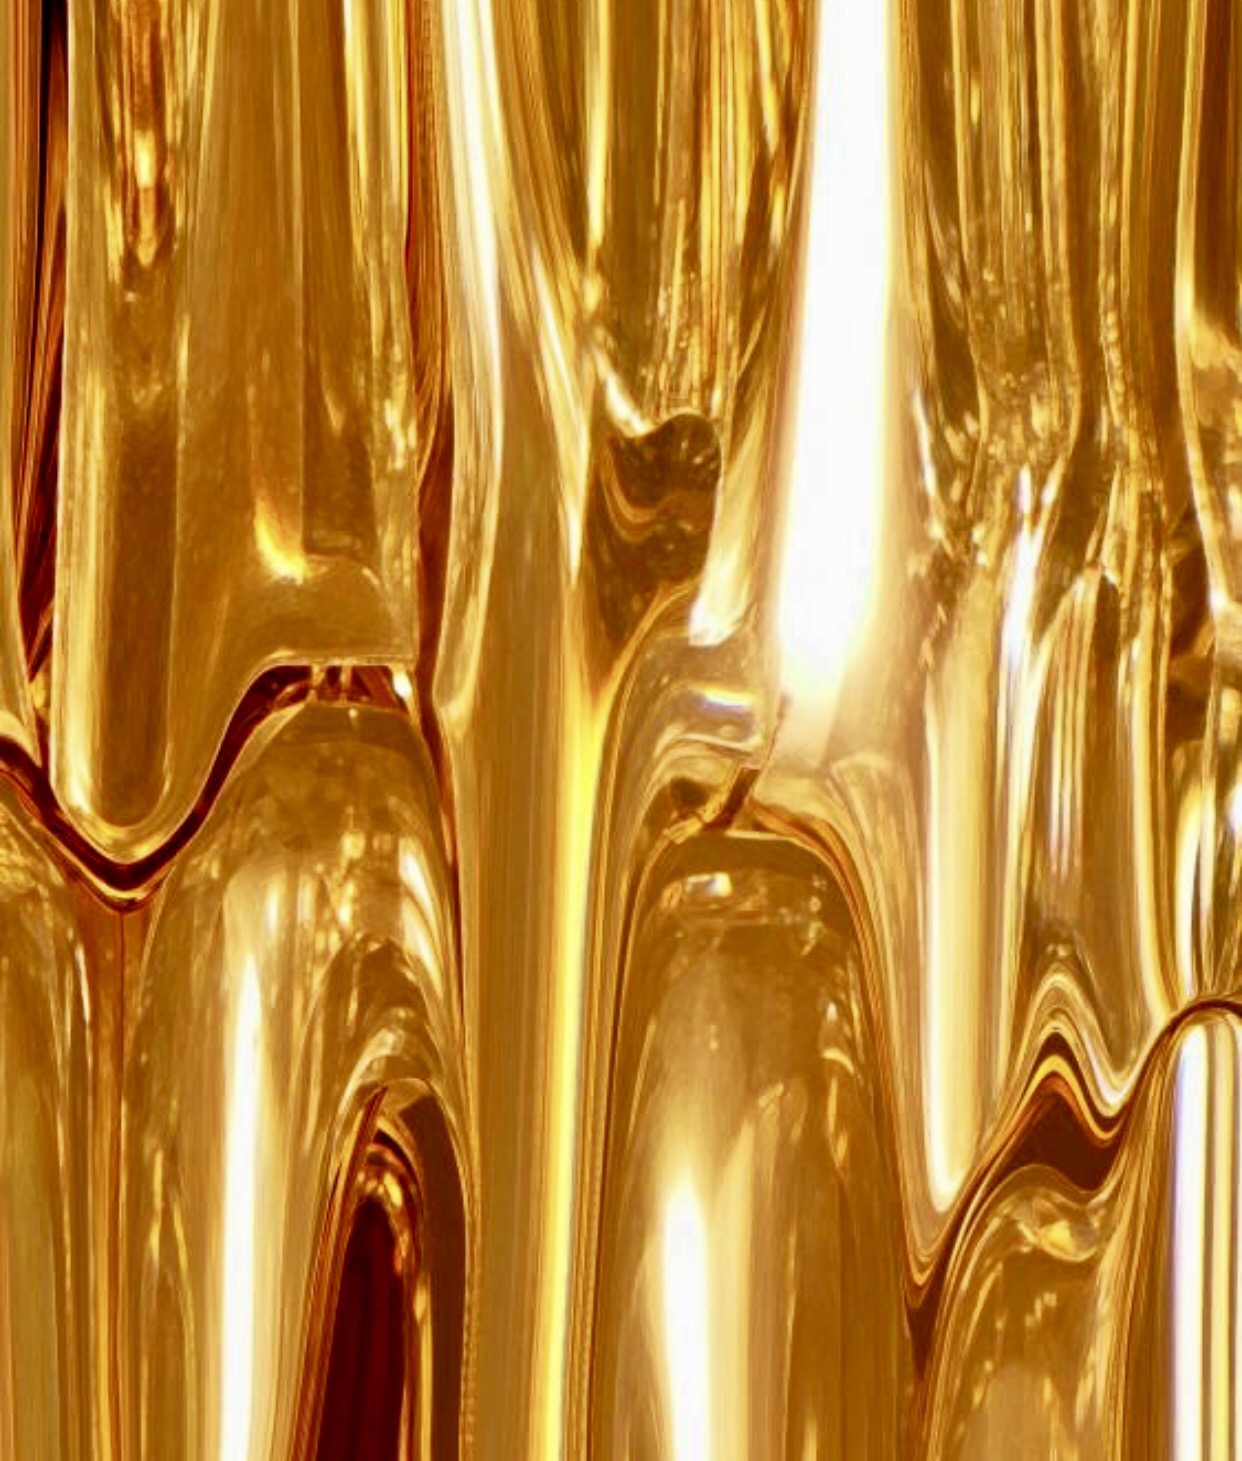 What is called 'liquid gold'? - Quora